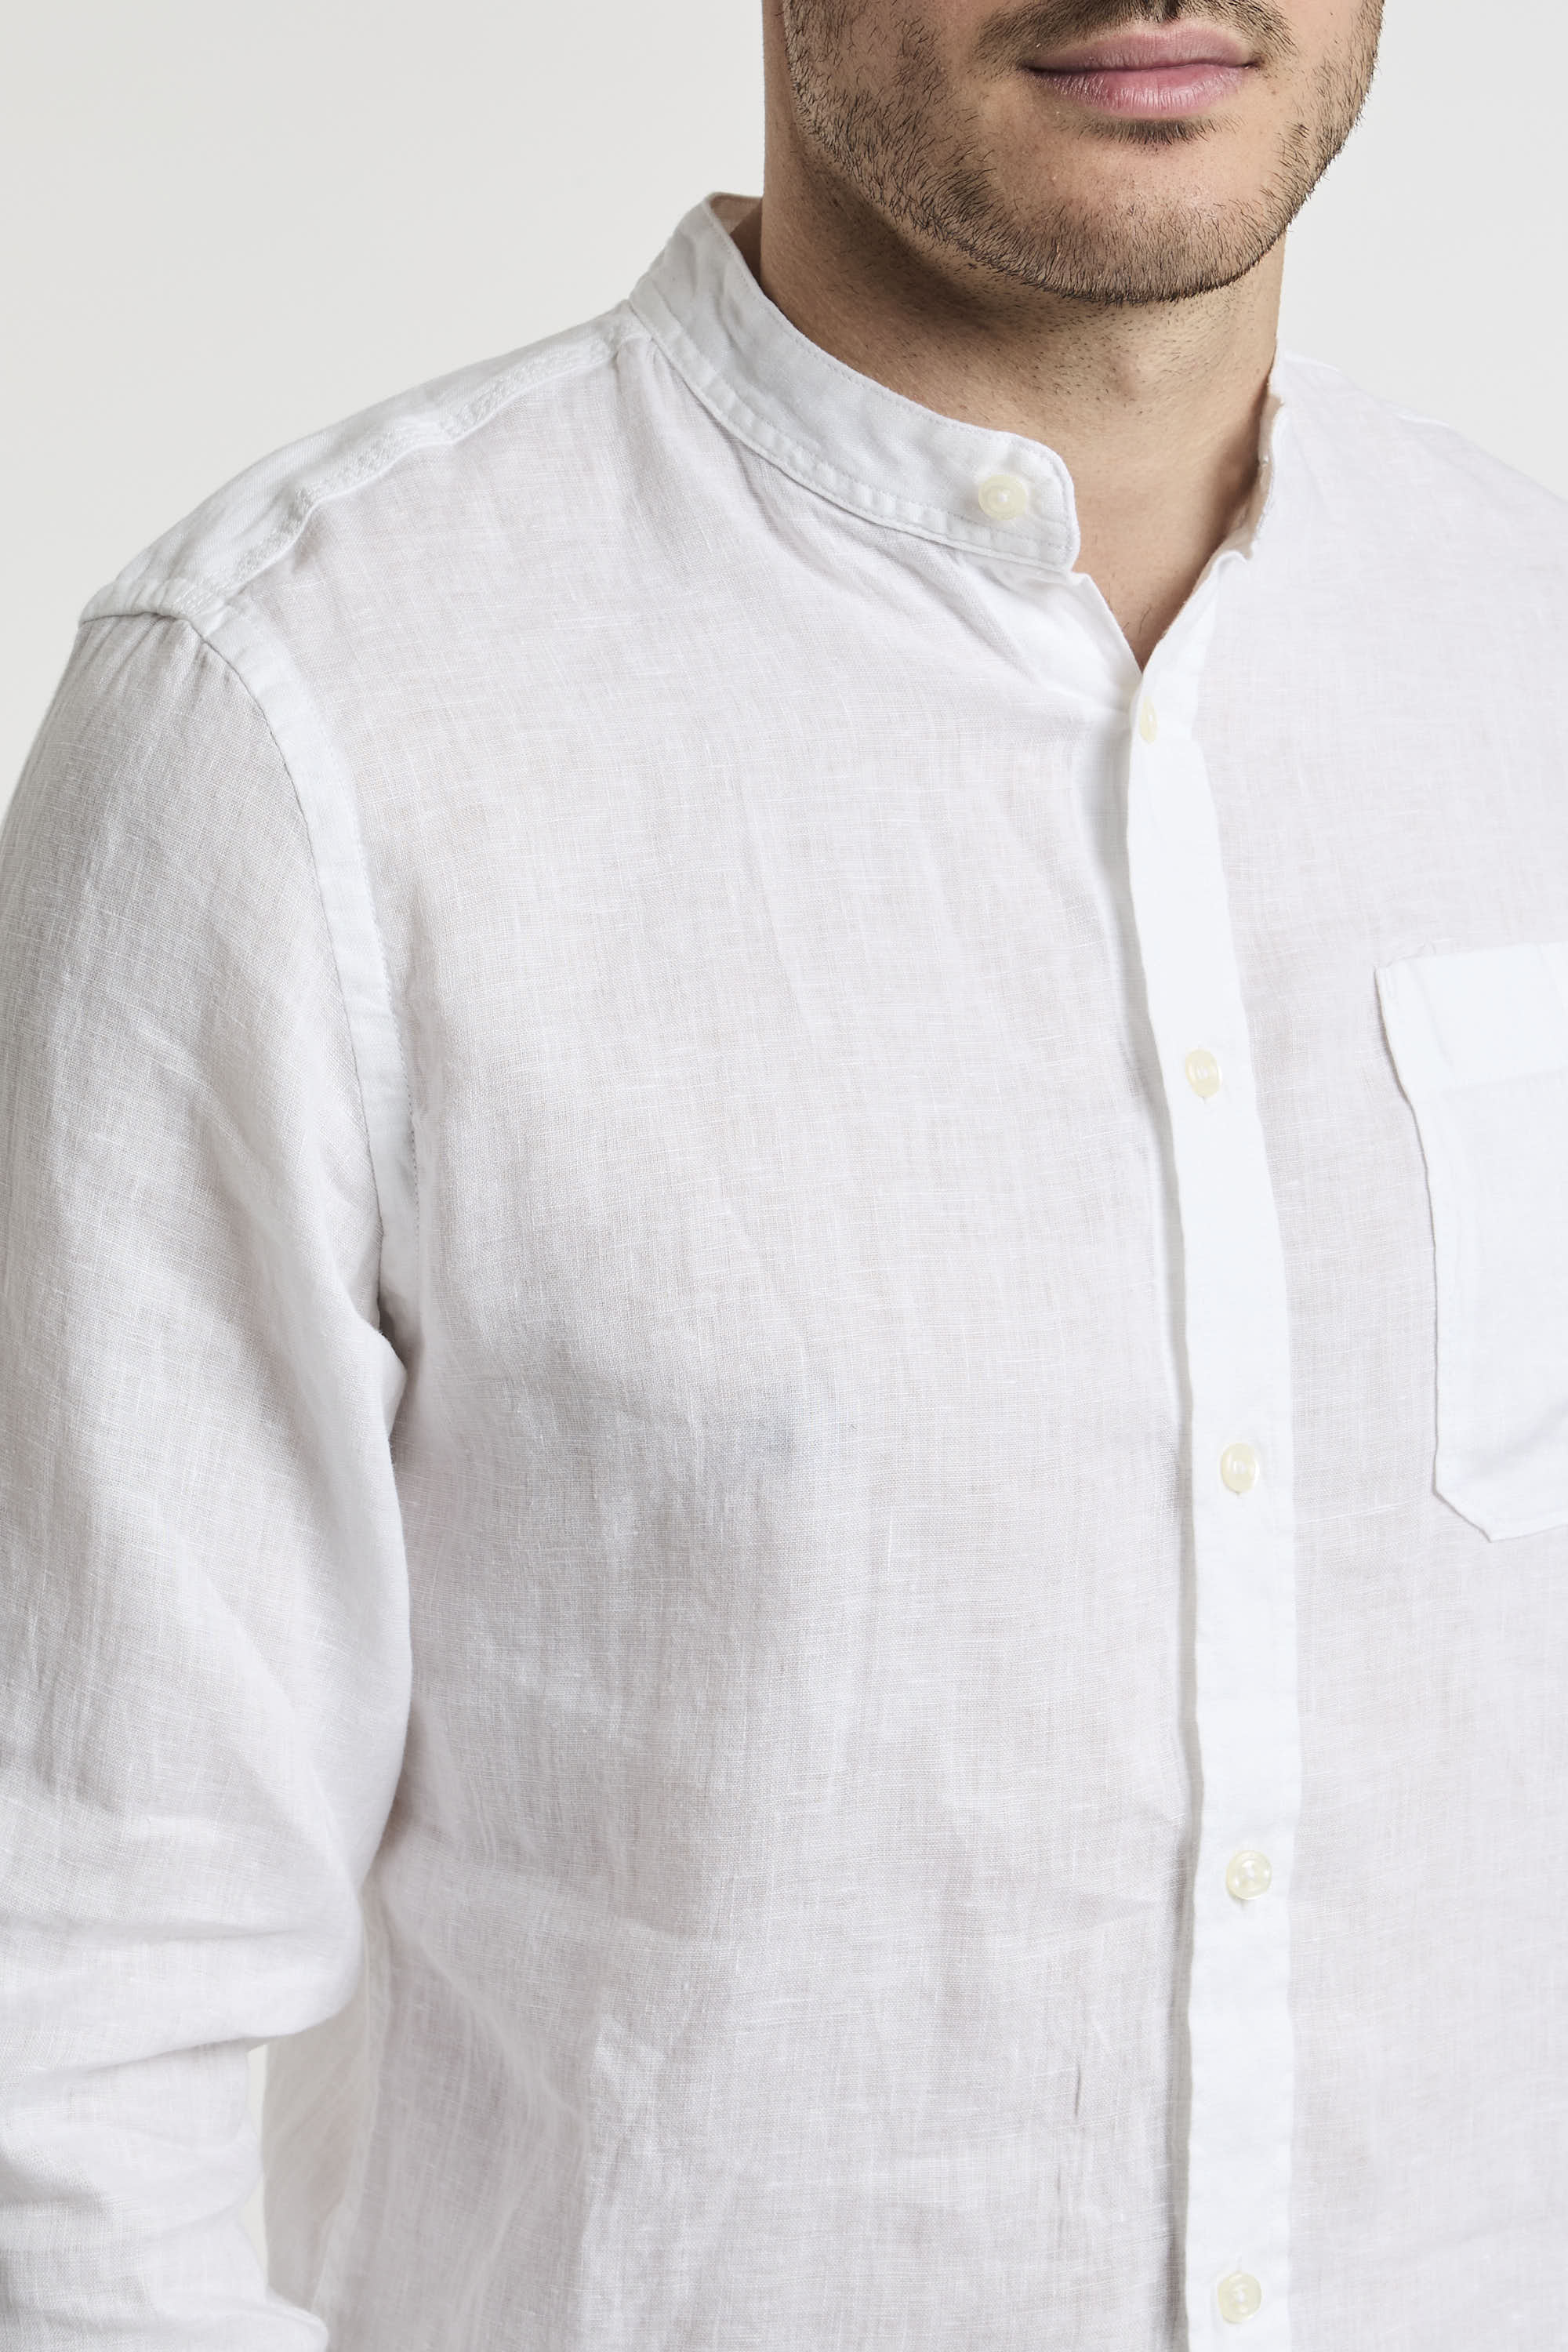 Woolrich Mandarin Collar Pure Linen Shirt White-1